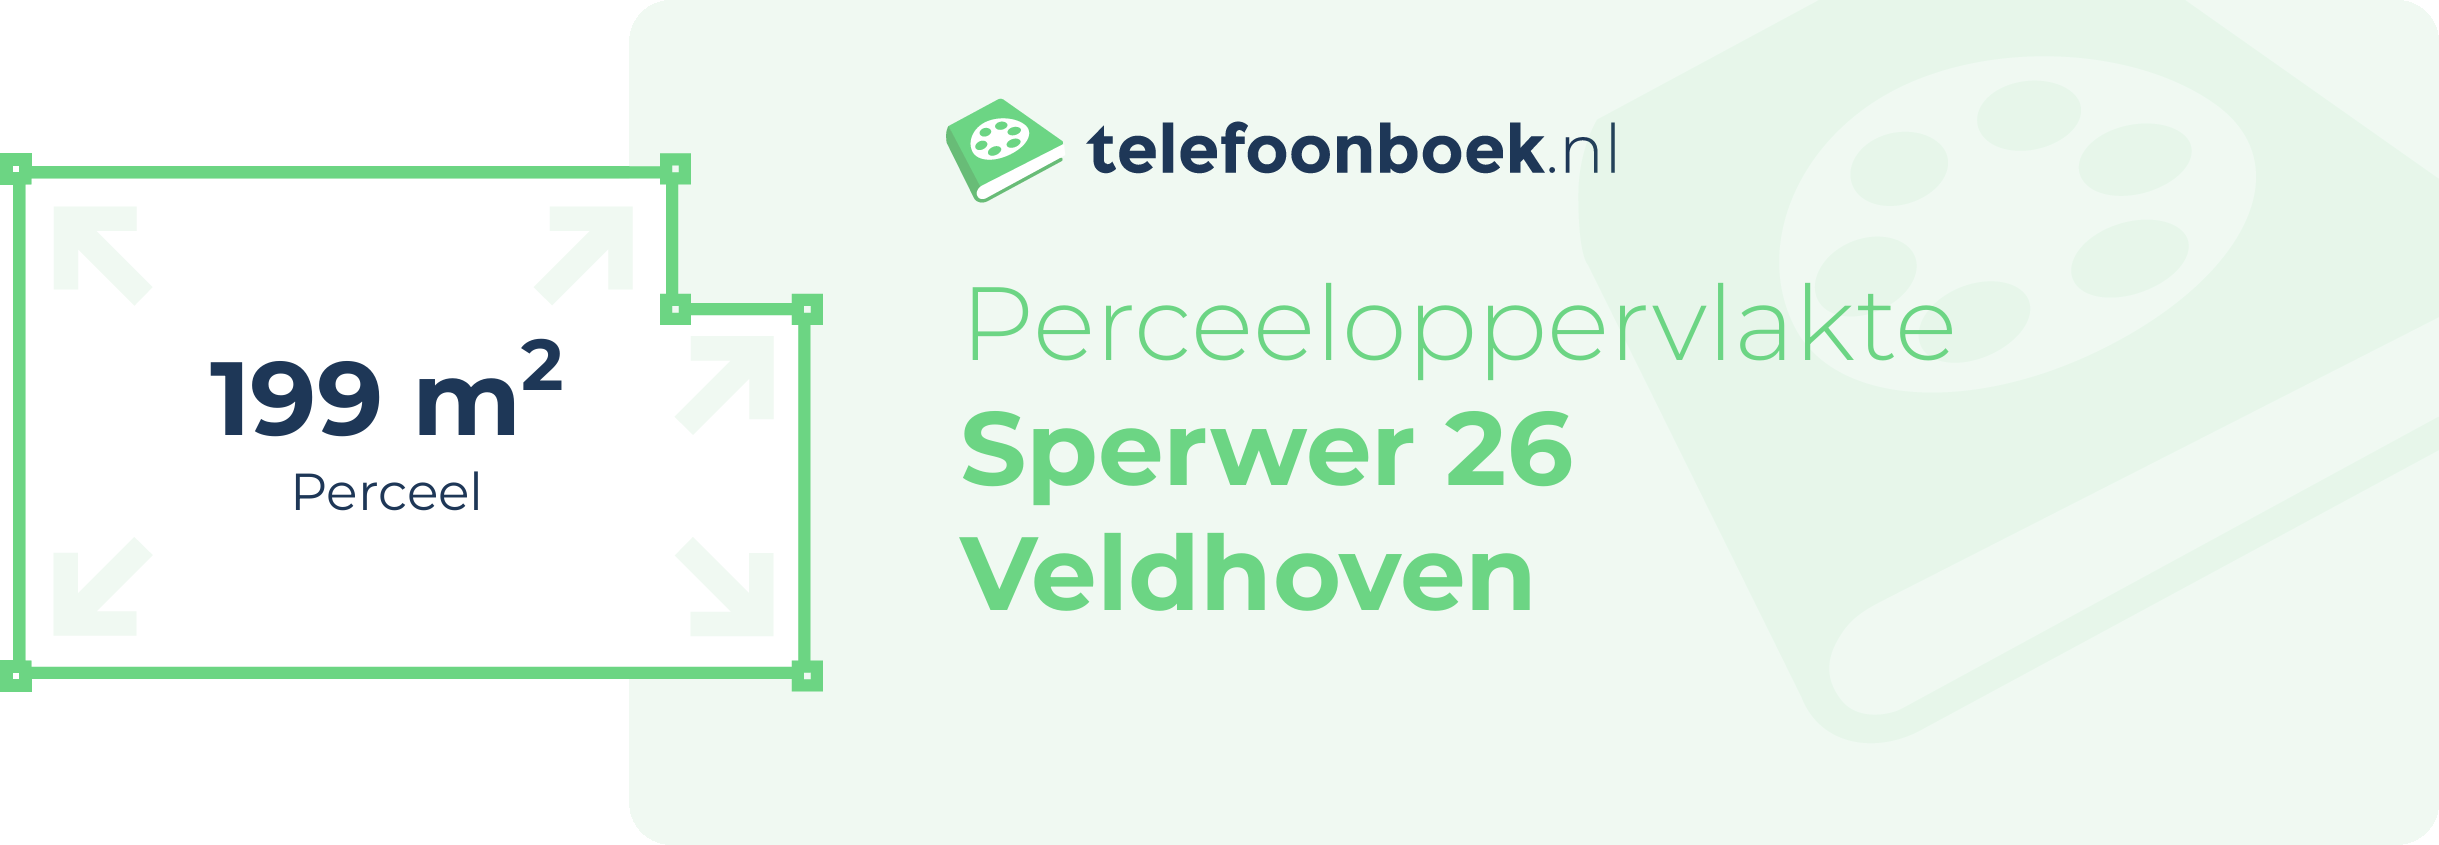 Perceeloppervlakte Sperwer 26 Veldhoven